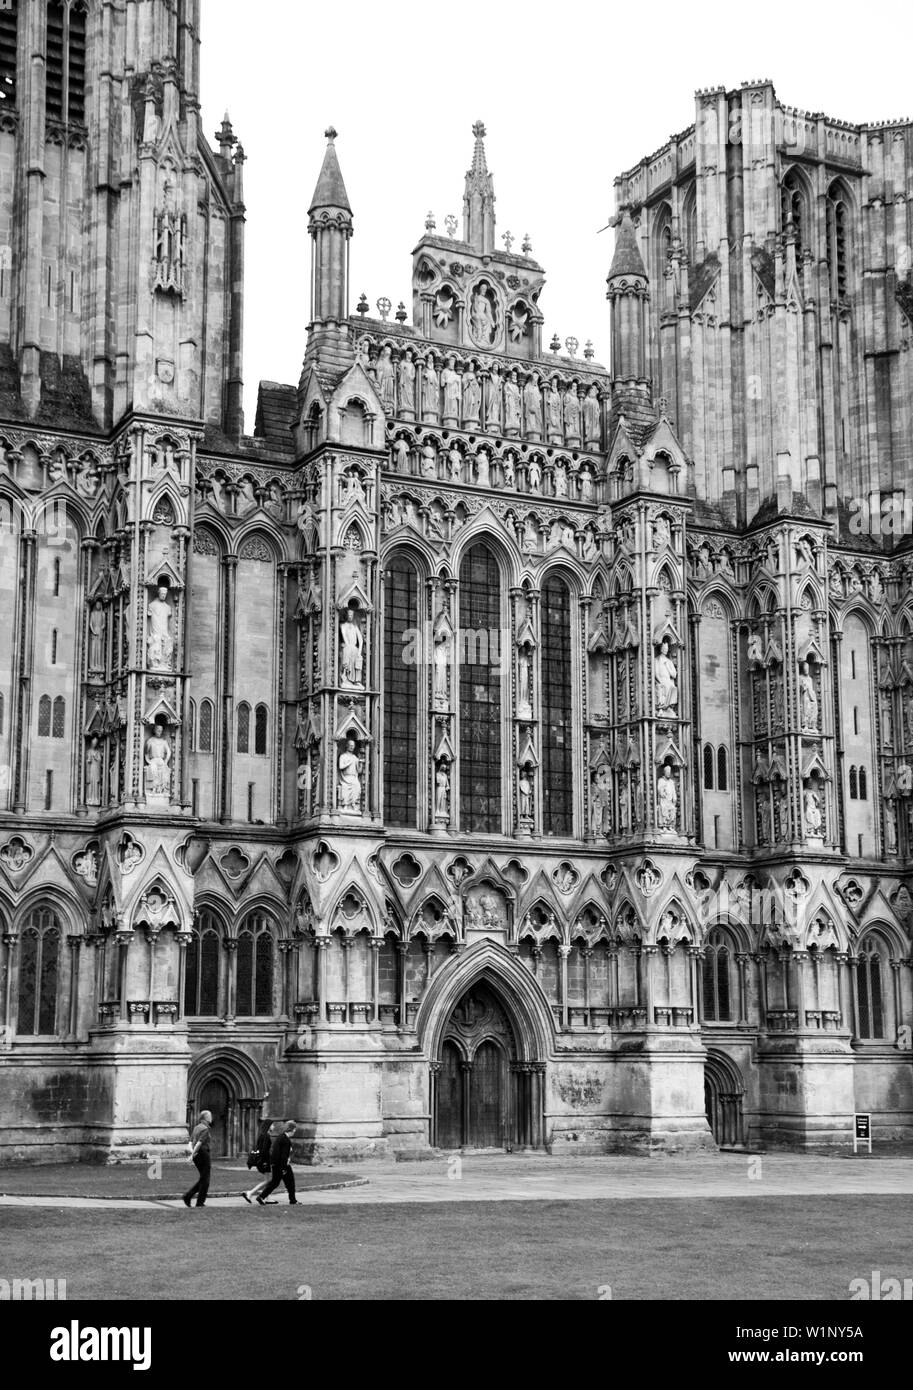 Facciata della cattedrale di Wells, per lo più la prima architettura gotica inglese dalla fine del XII all'inizio del XIII secolo con 300 figure scolpite davanti, Somerset. Foto Stock